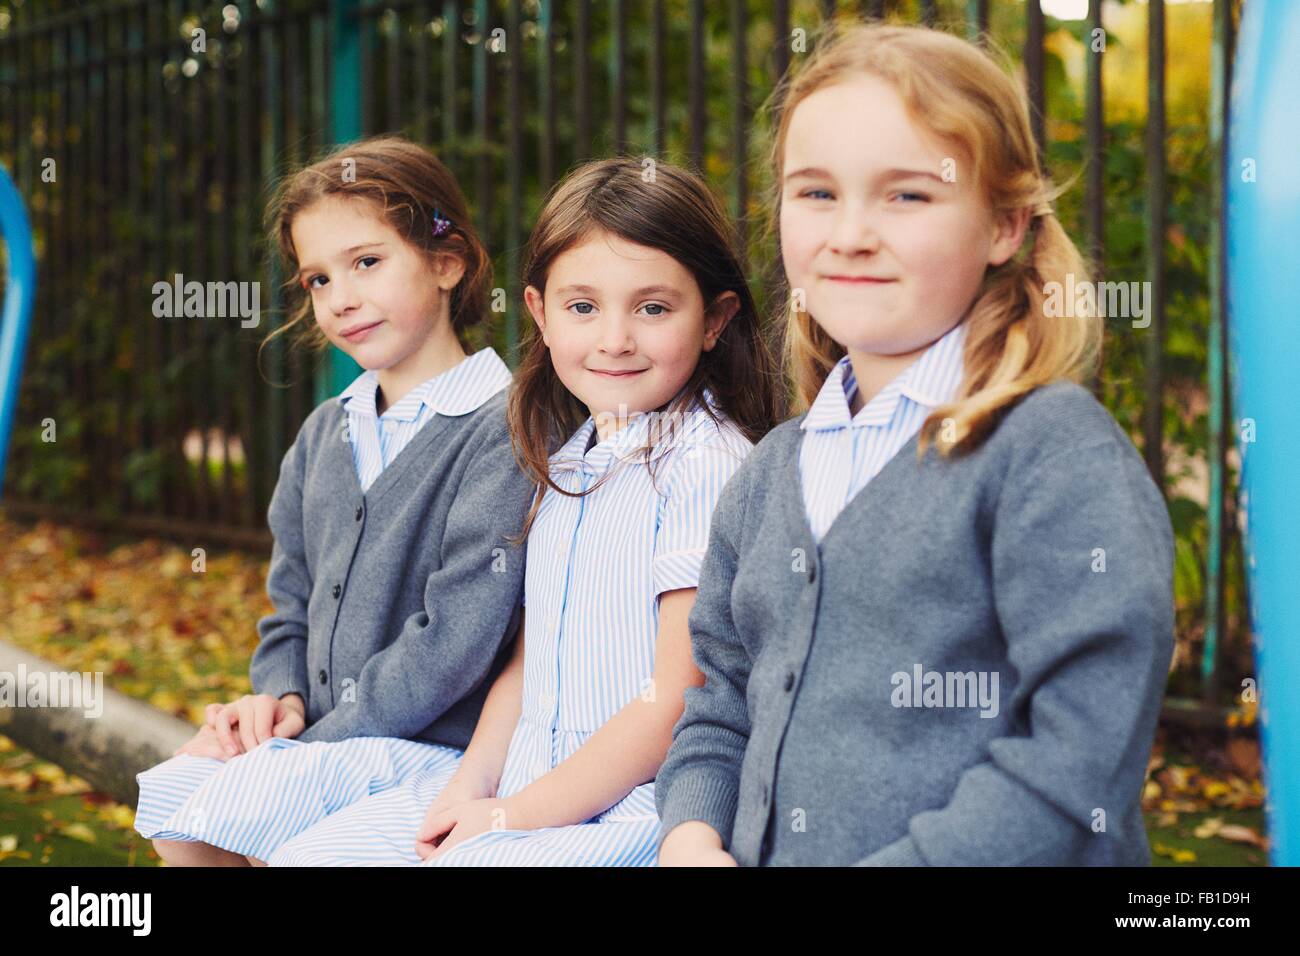 Ritratto di tre studentesse elementari nel parco giochi Foto Stock